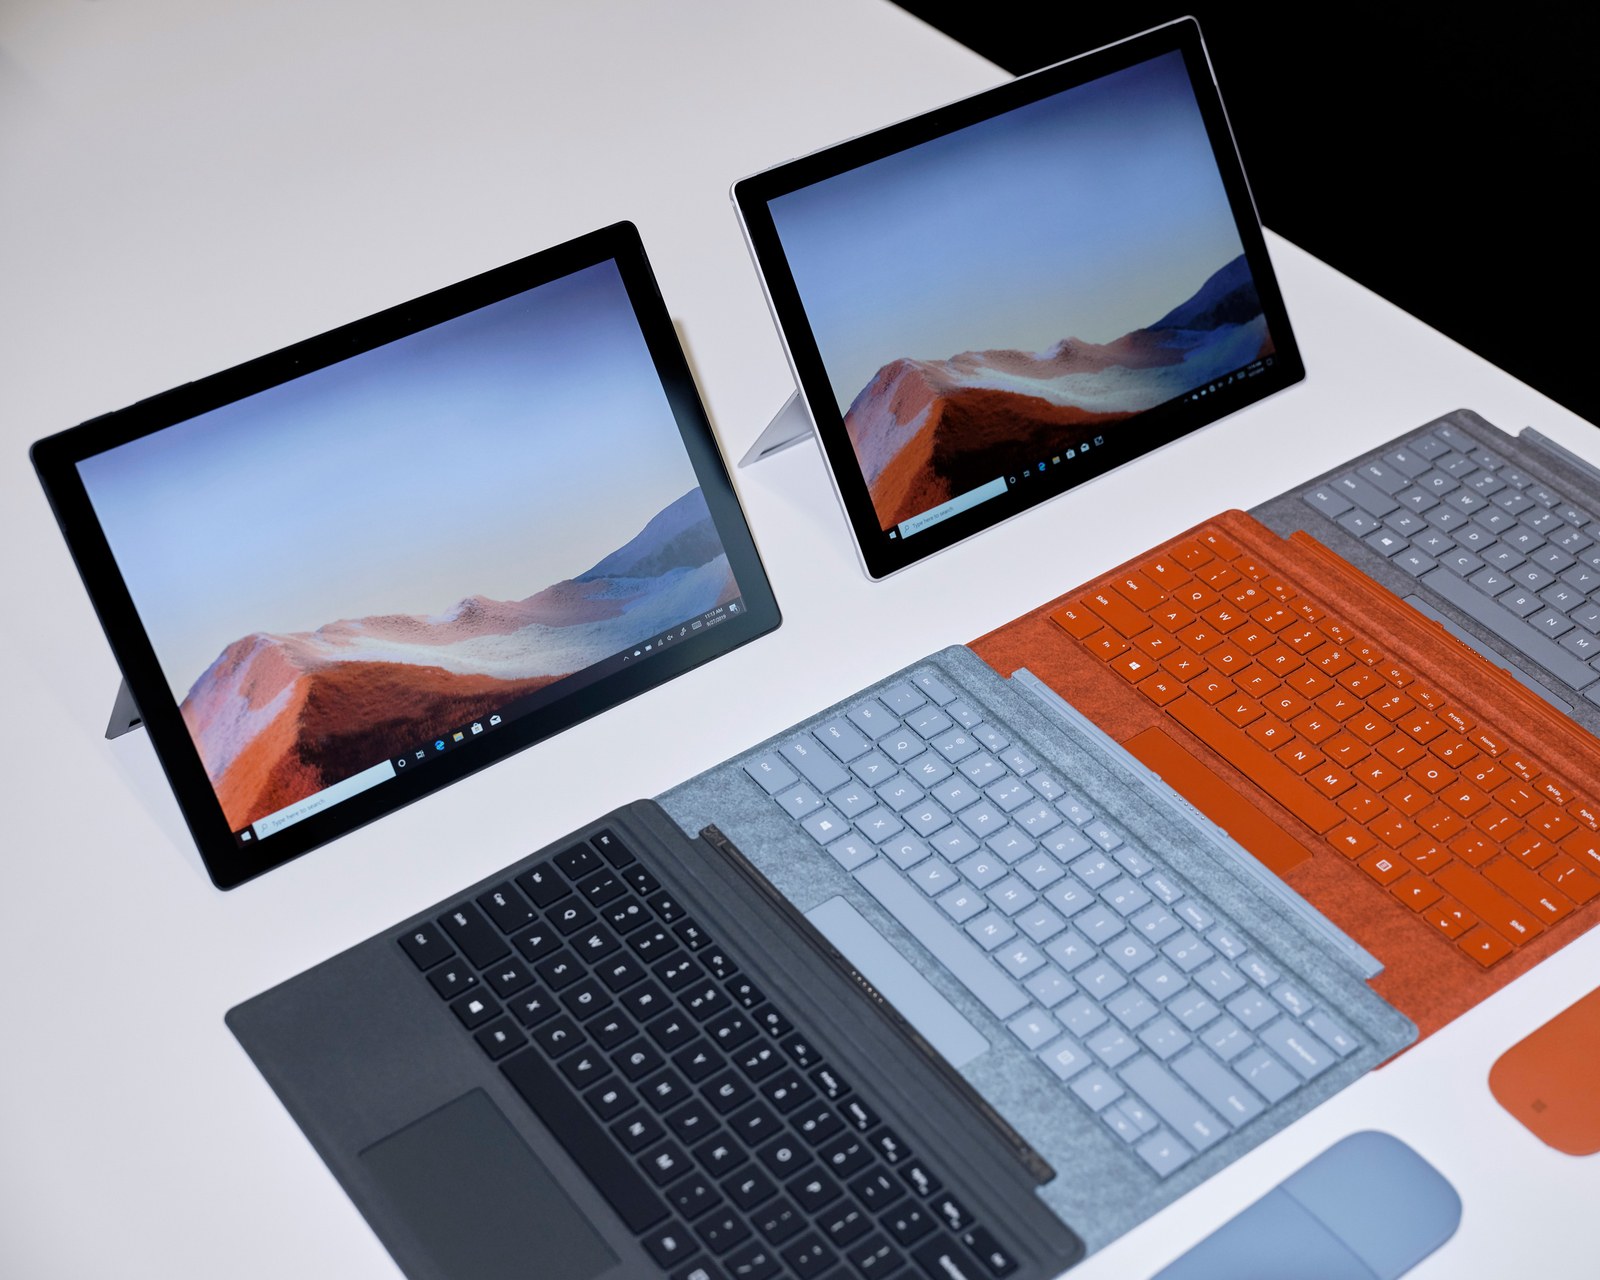 New Surface Pro 7 Details Leak - The Redmond Cloud